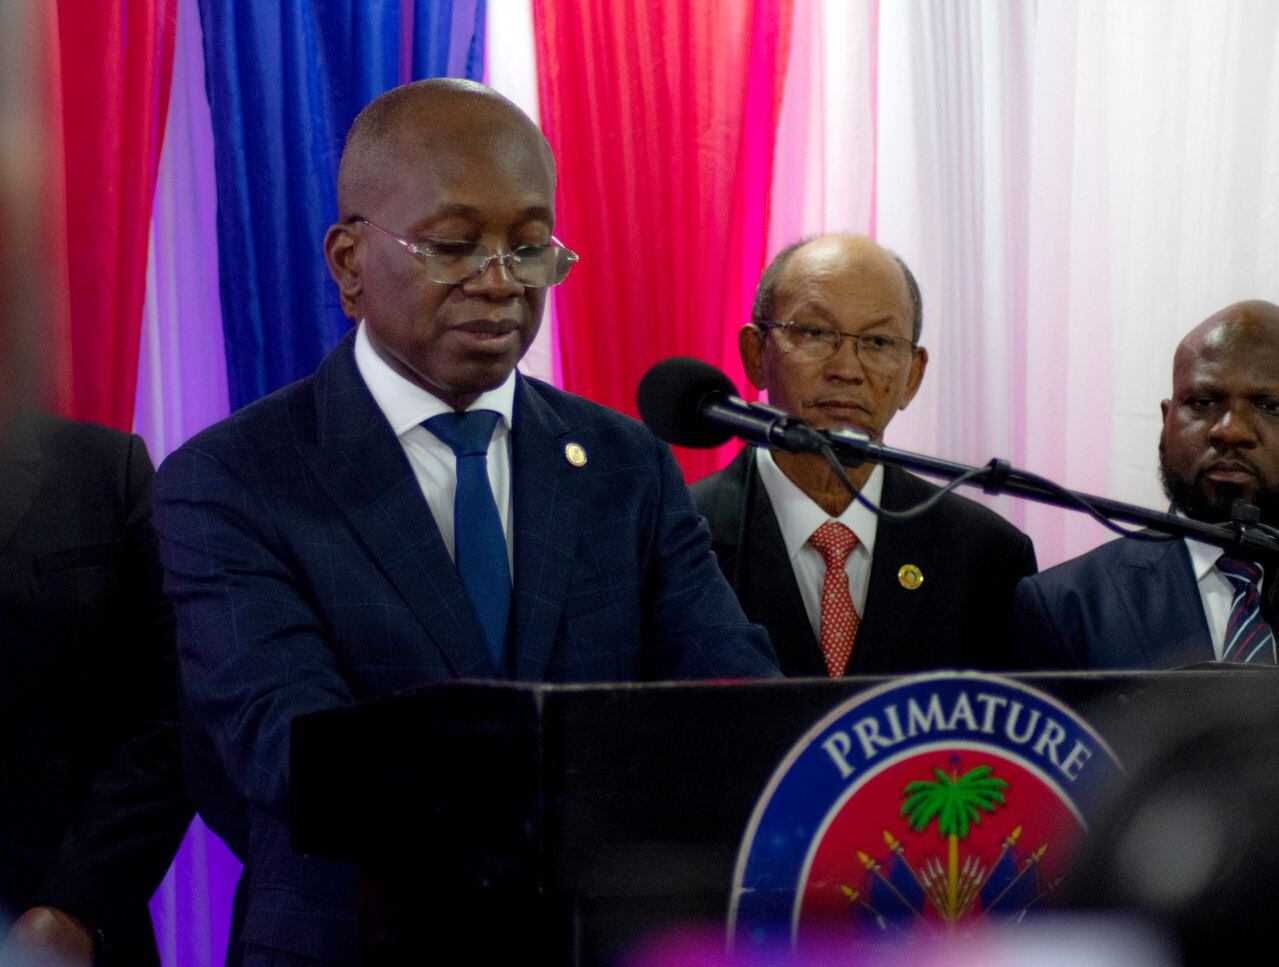 El primer ministro de Haití, Ariel Henry, anunció su renuncia el jueves y entregará el poder a un consejo de transición que buscará hacerse con el control de la nación.